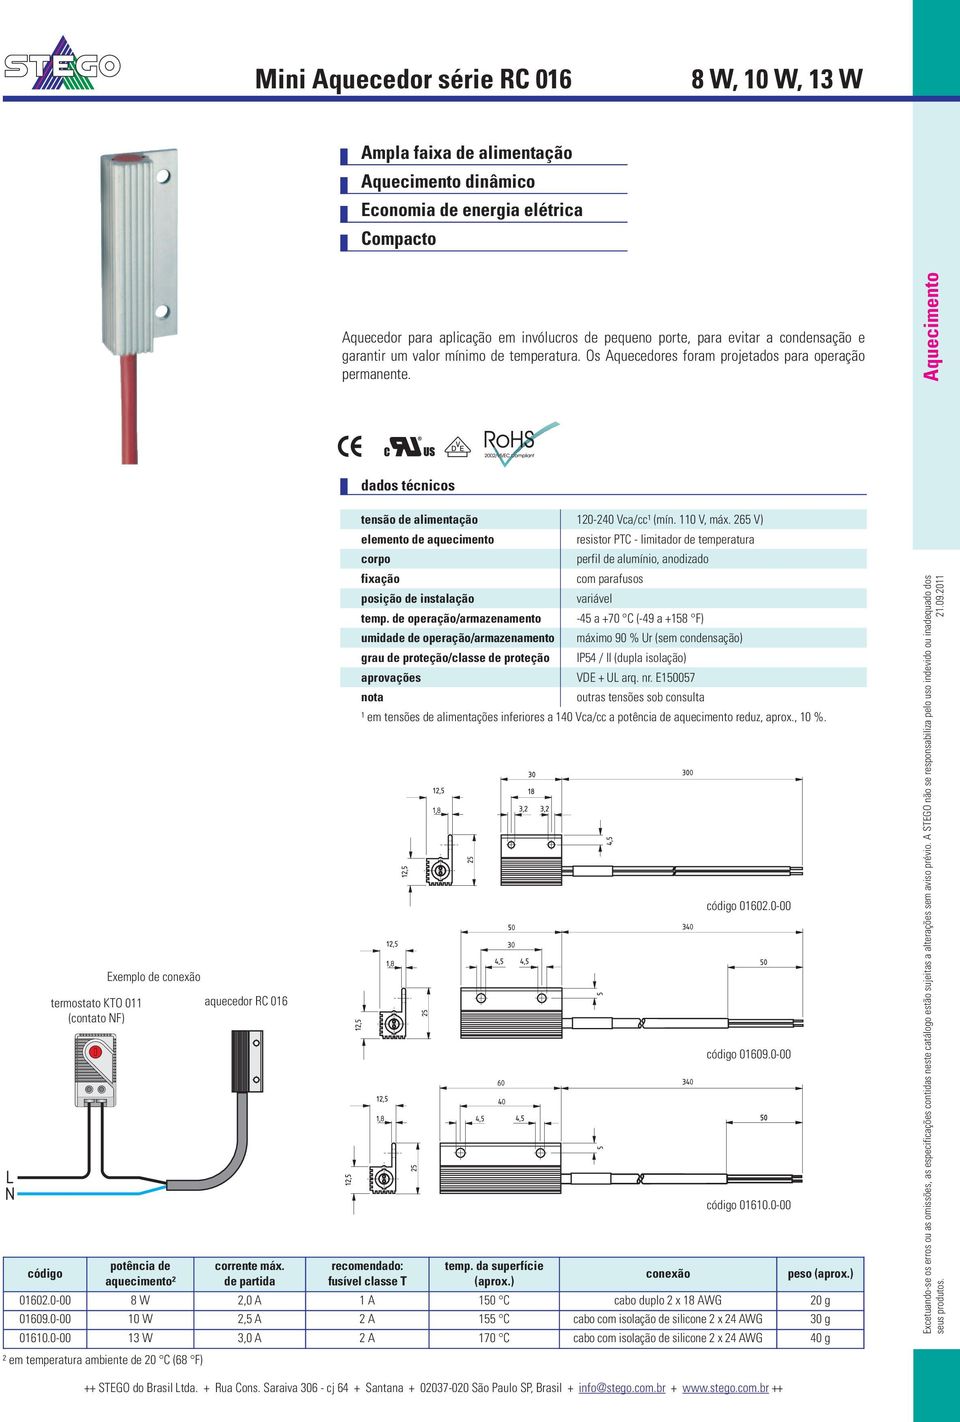 Aquecimento L N código termostato KTO 011 (contato NF) Exemplo de potência de aquecimento² aquecedor RC 016 corrente máx. de partida tensão de alimentação 120-240 Vca/cc¹ (mín. 110 V, máx.